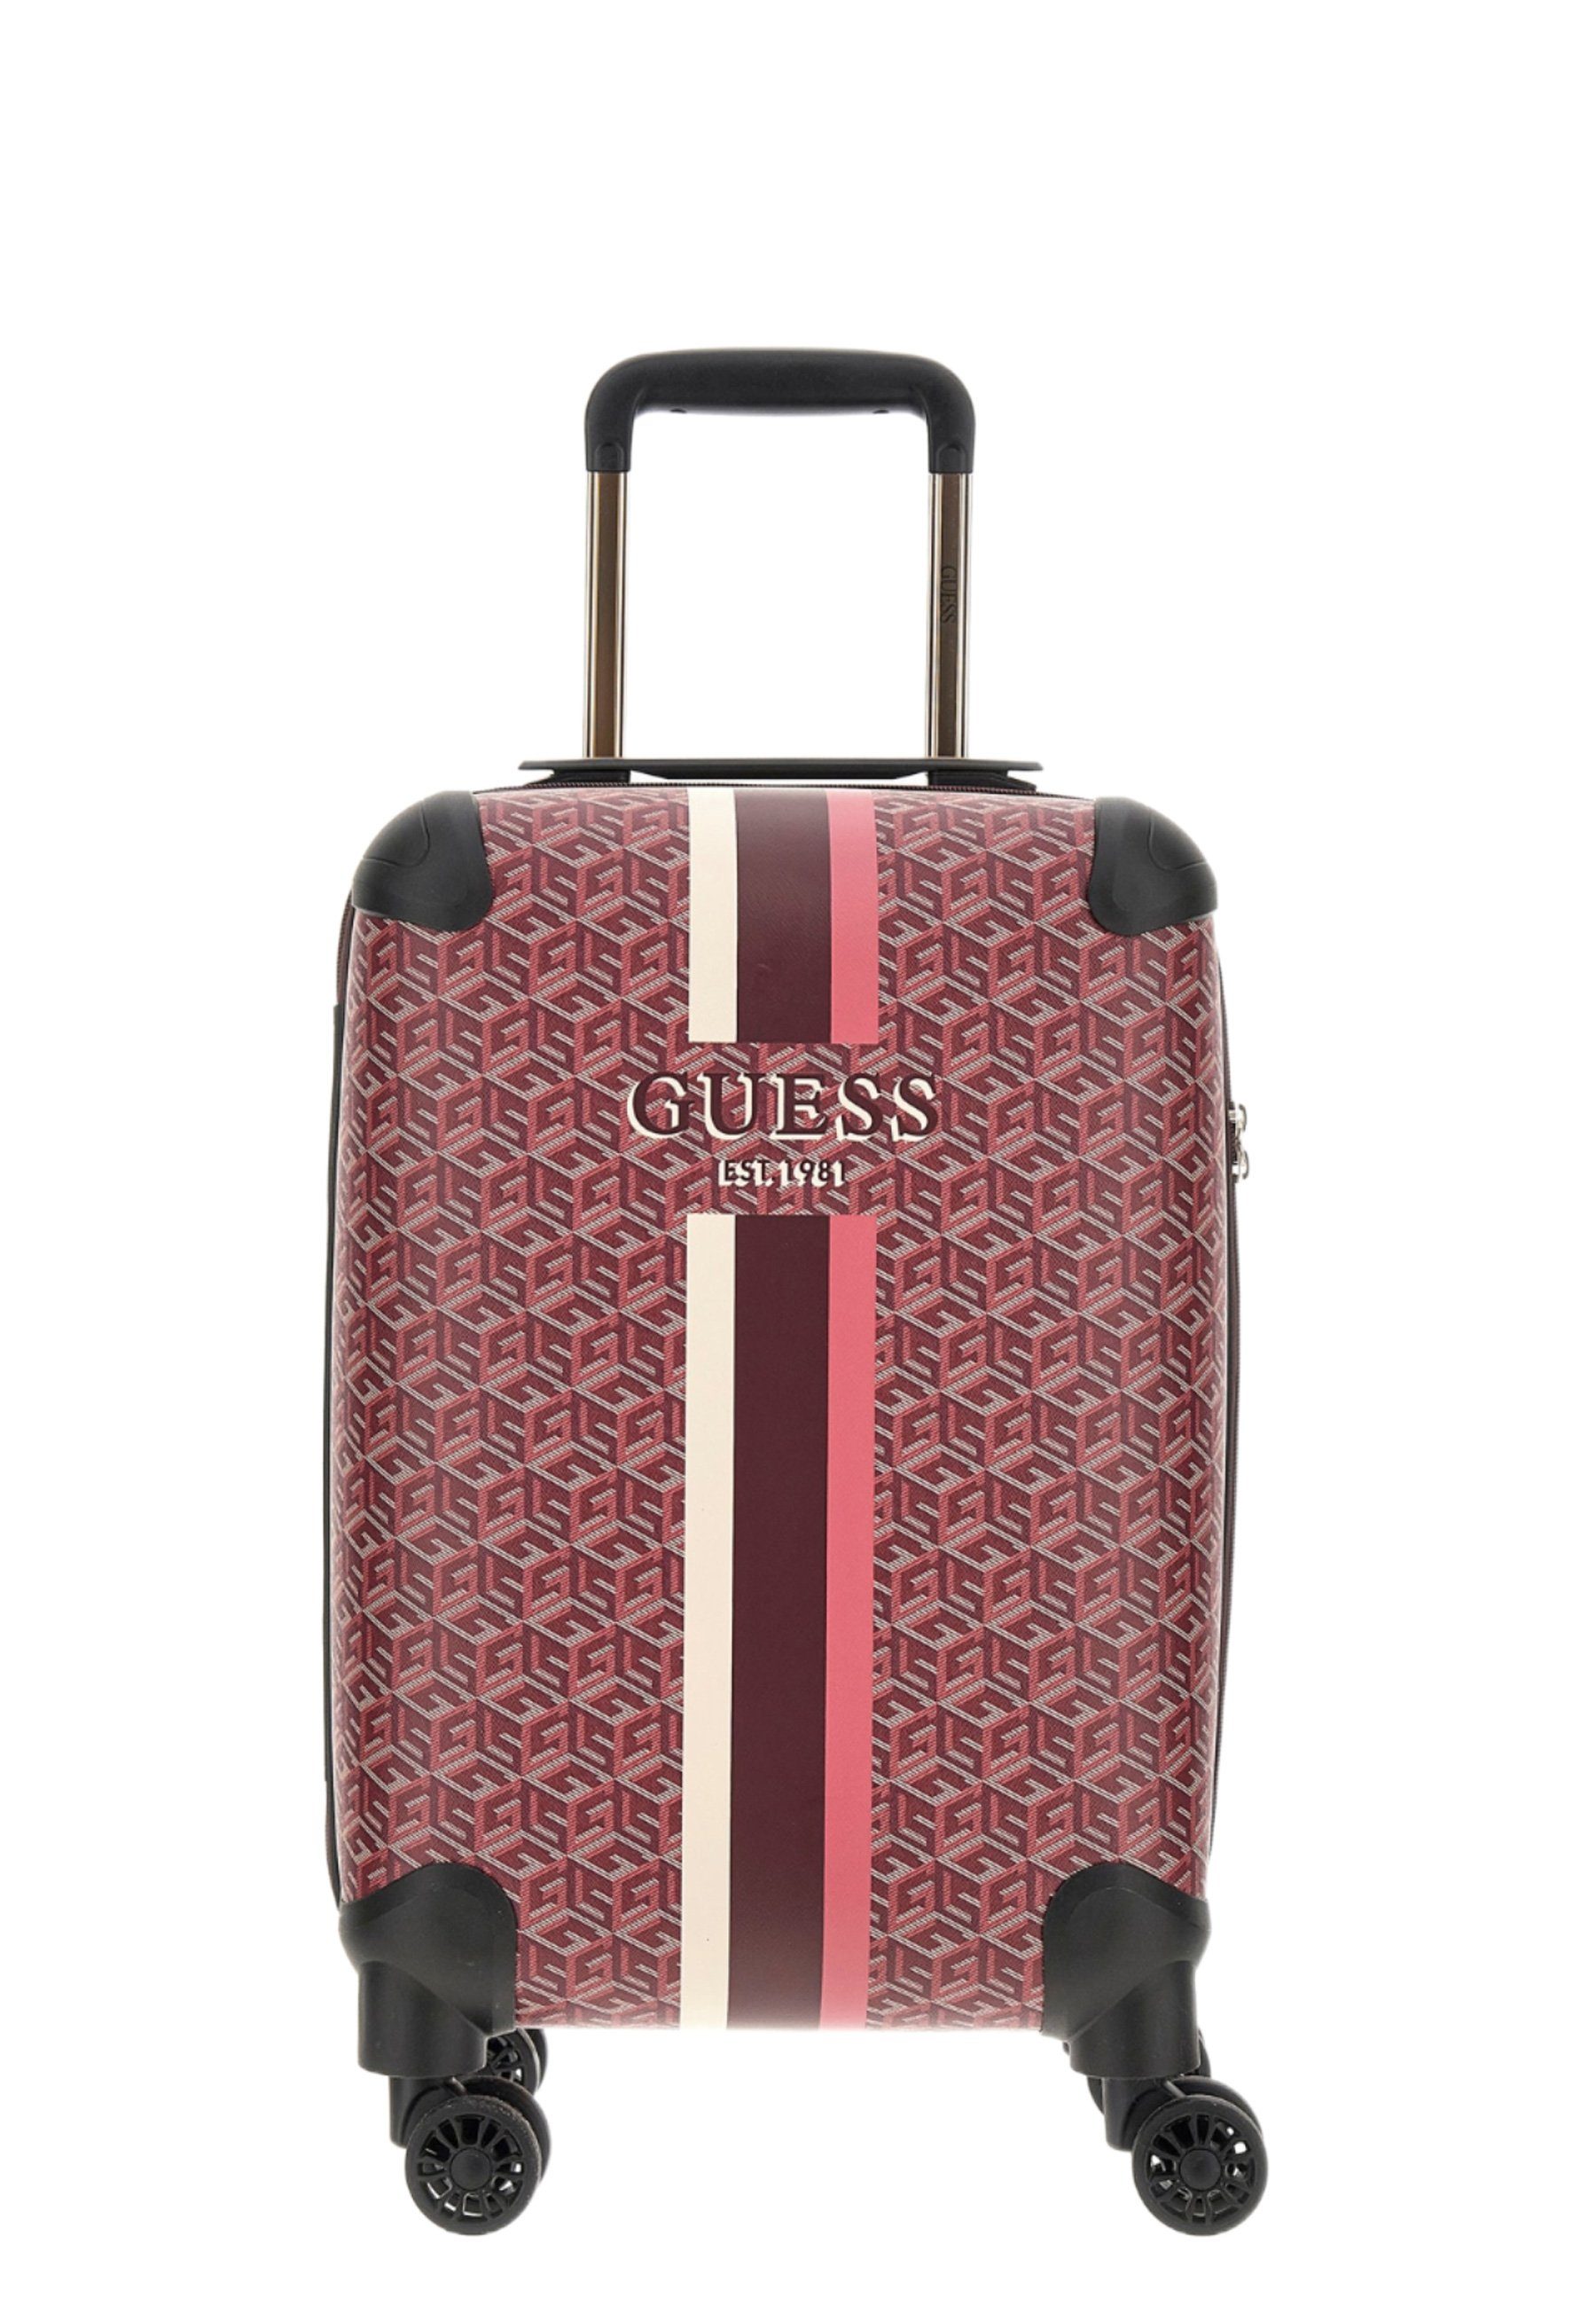 Guess Koffer online kaufen » Guess Reisekoffer | OTTO